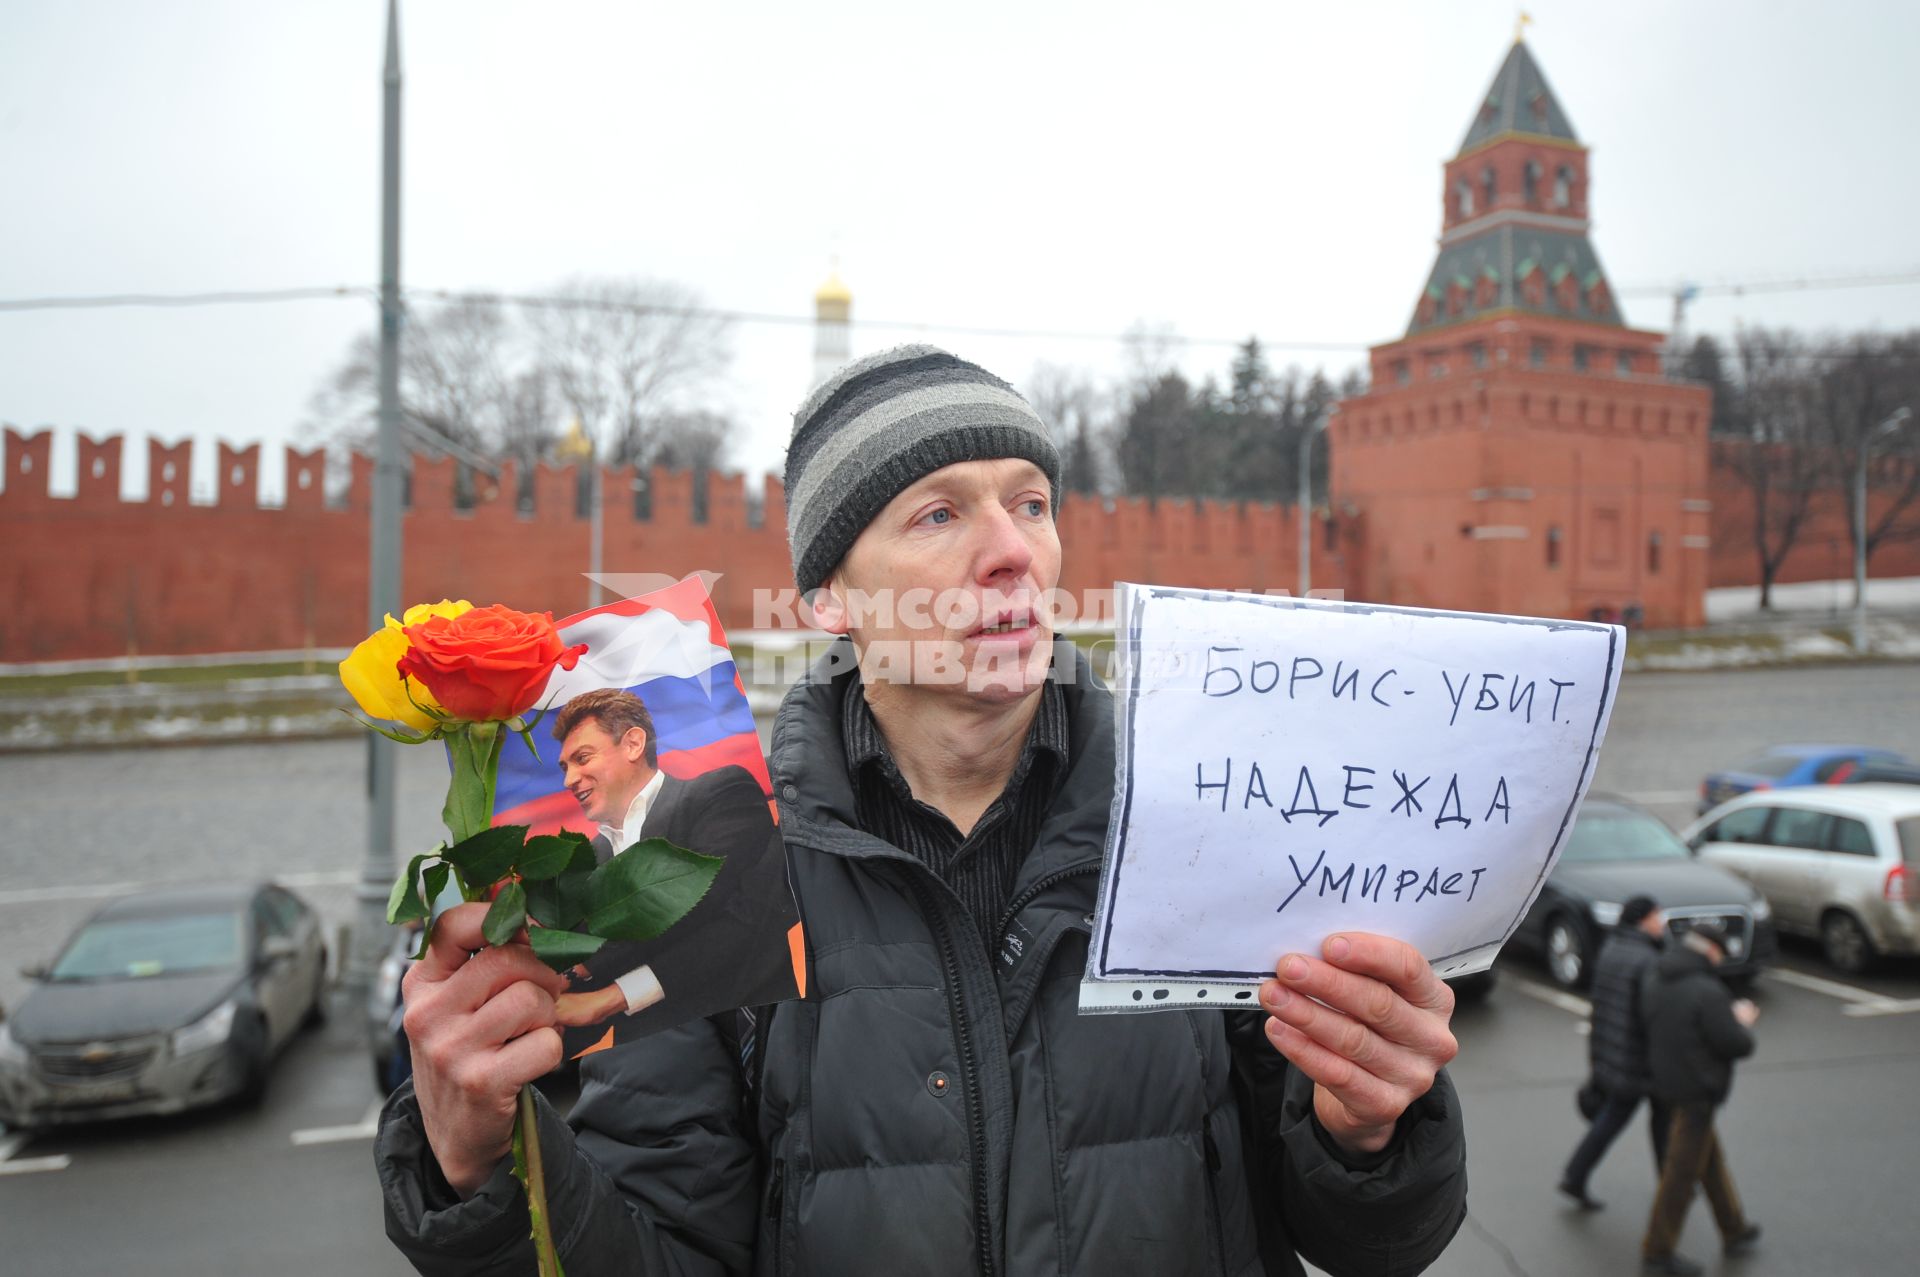 Возложение цветов на месте убийства политика Бориса Немцова, который был застрелен в Москве на Большом Москворецком мосту в ночь с 27-го на 28-е февраля 2015 г.